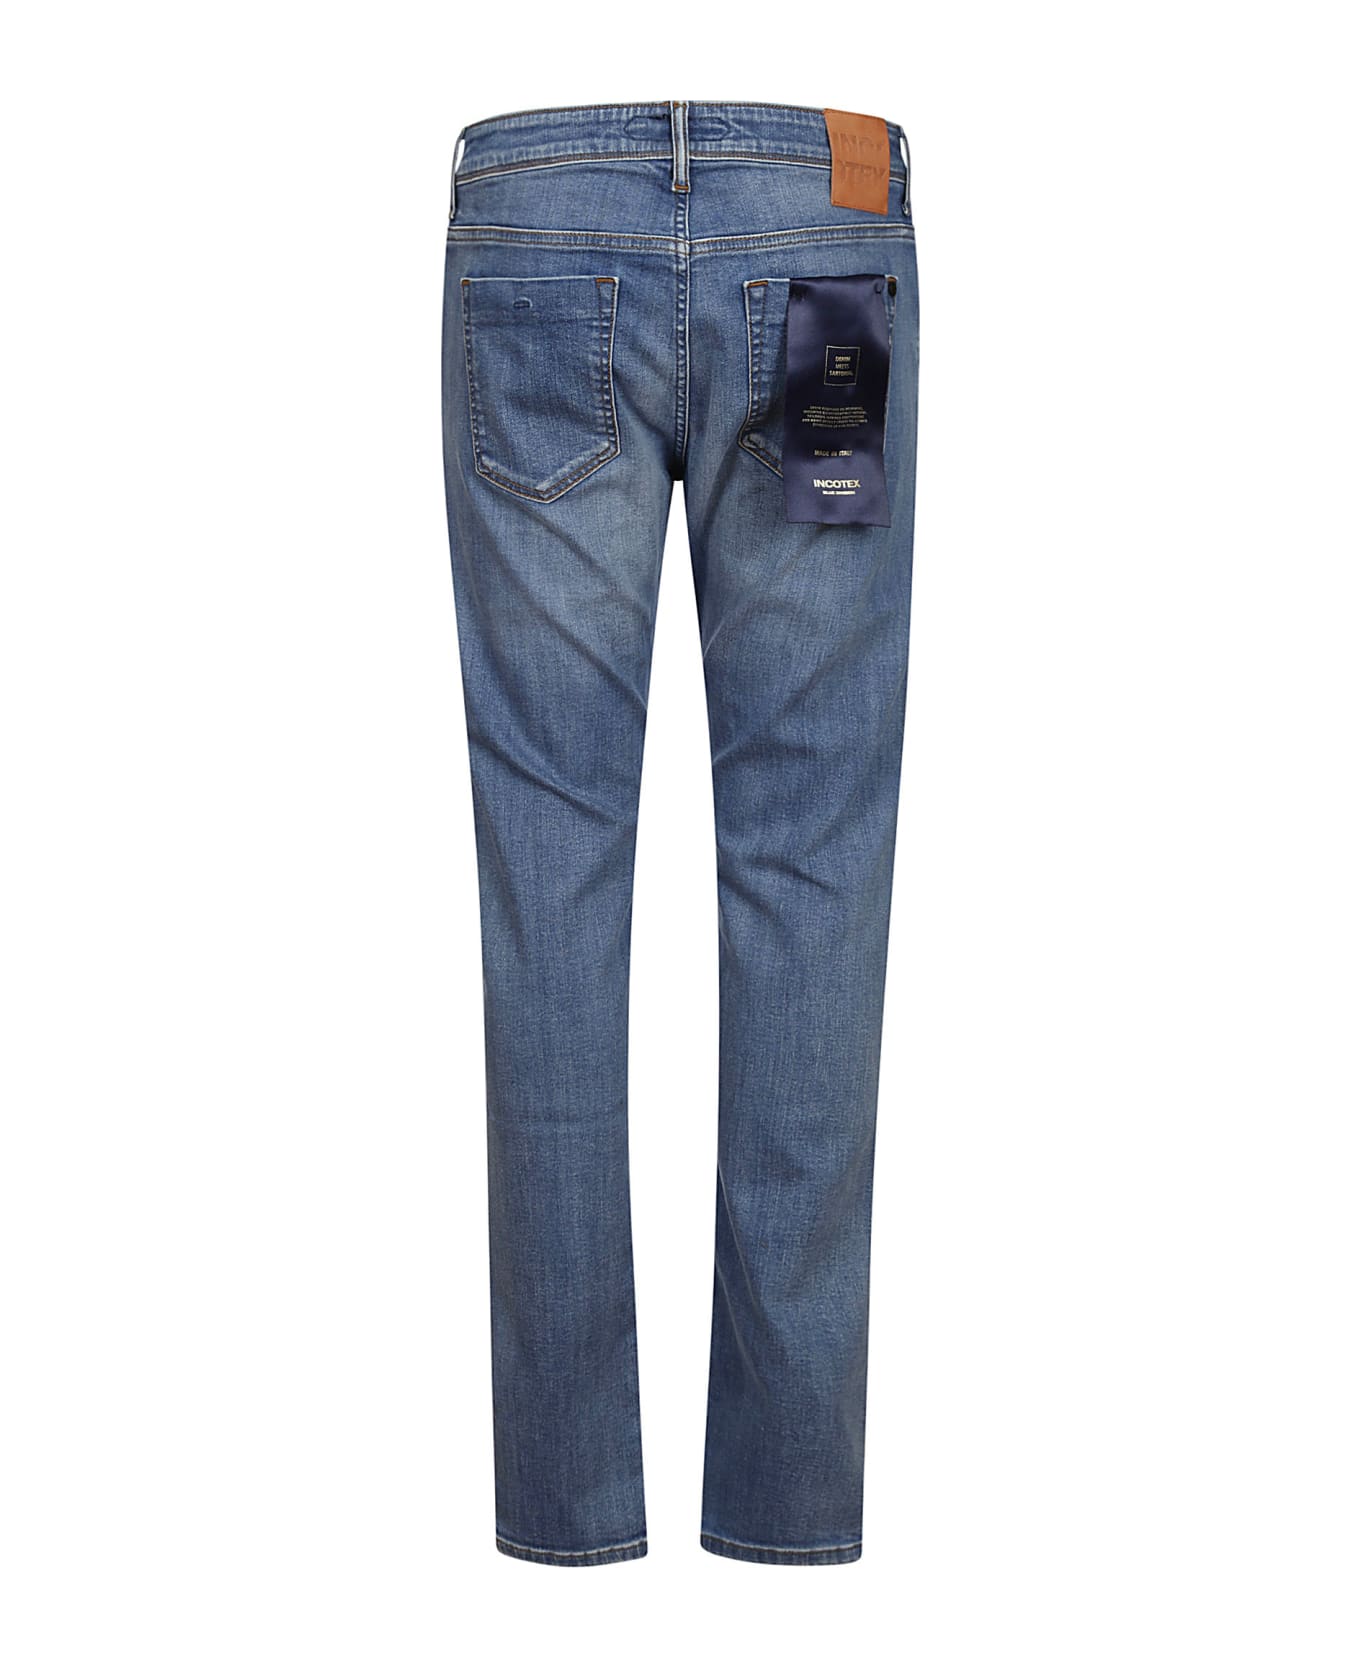 Incotex Jeans - Medium Blue Denim